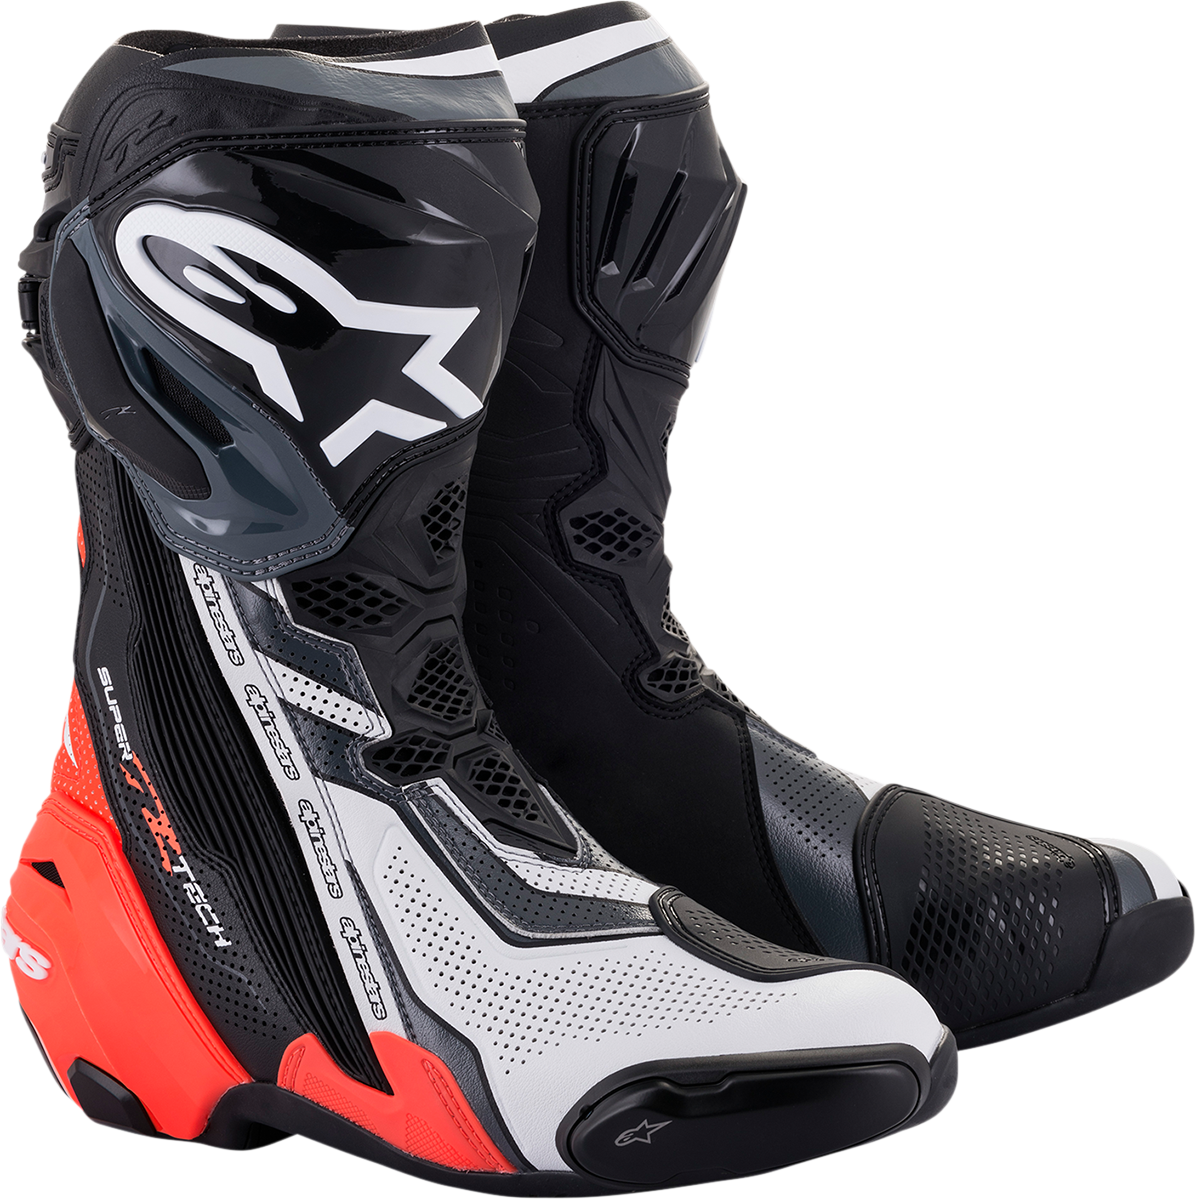 ALPINESTARS Supertech V Boots - Black/Red/White/Gray - US 11.5 / EU 46 2220121-1329-46